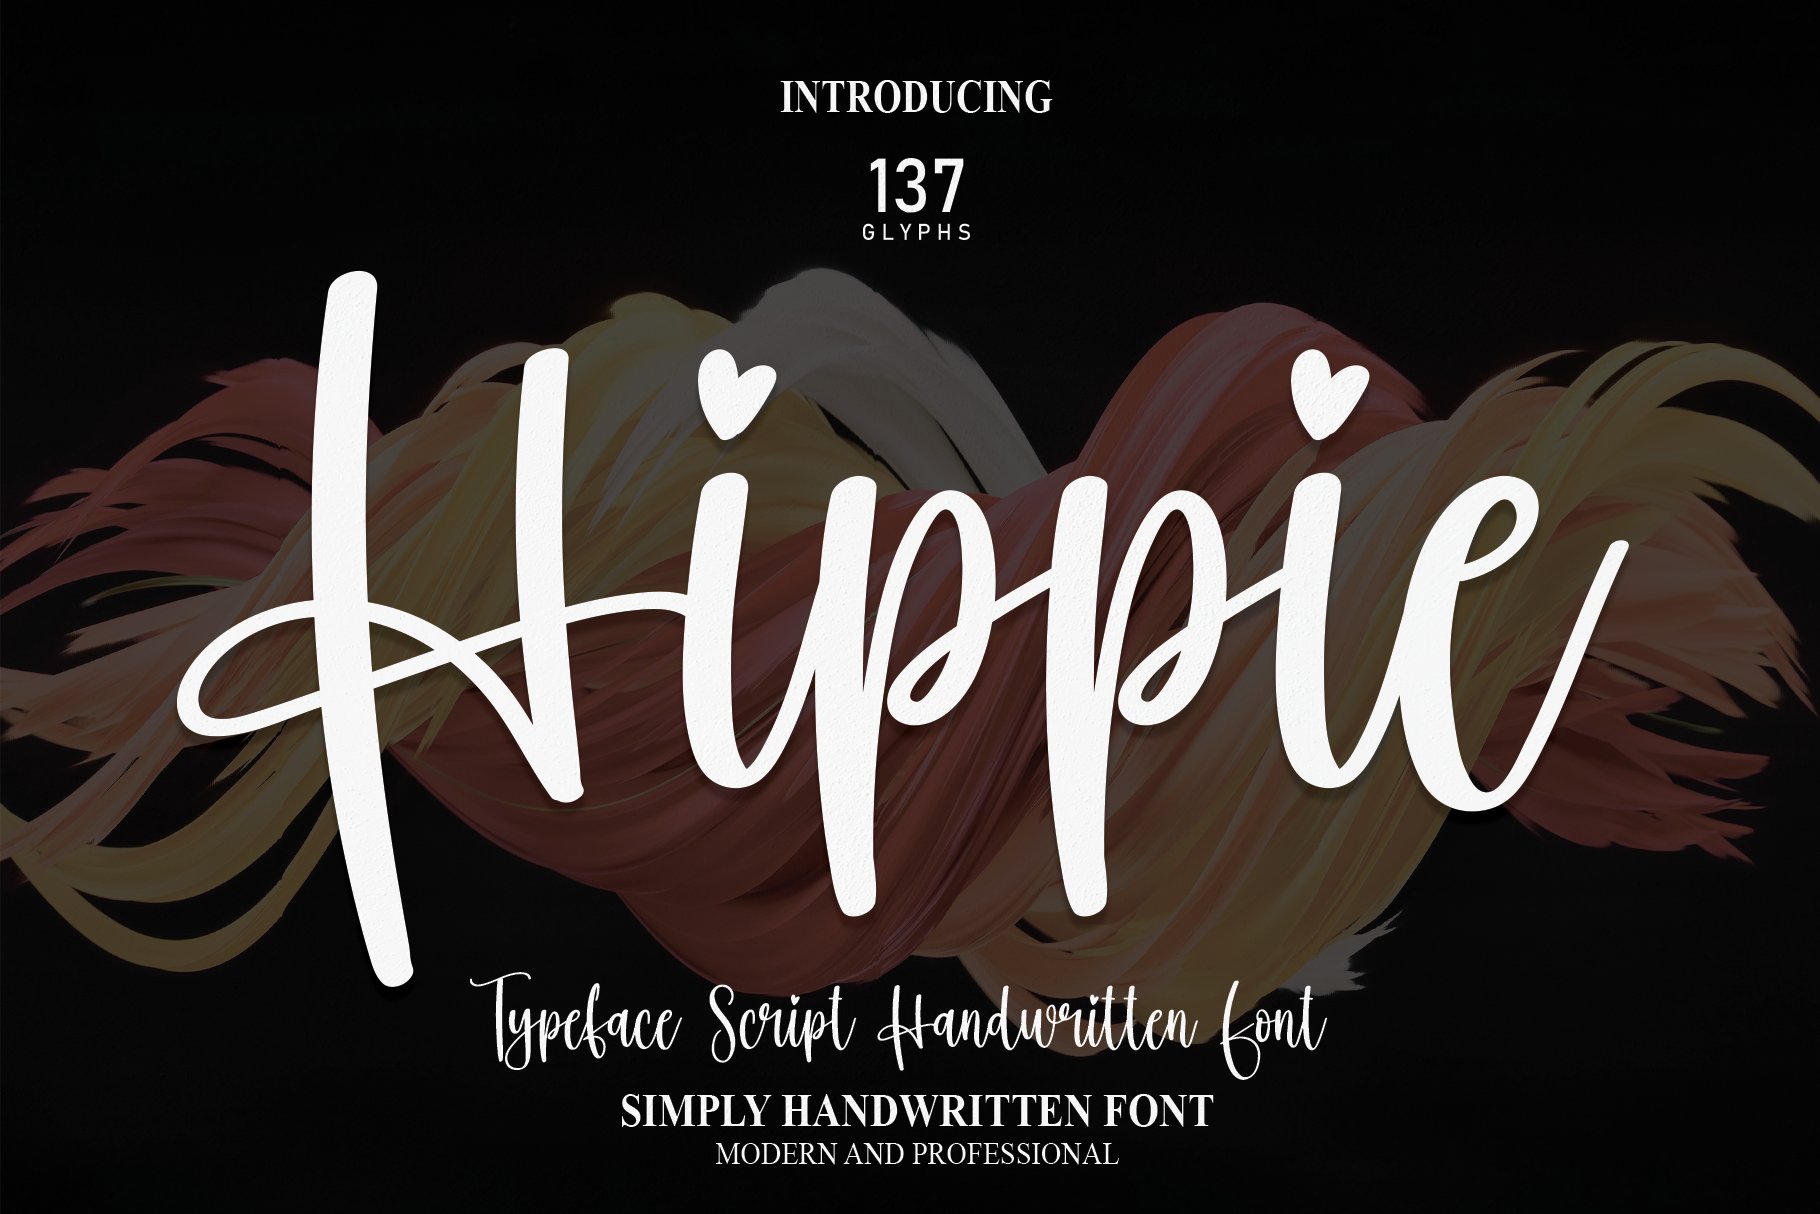 Hippie | Script Font cover image.